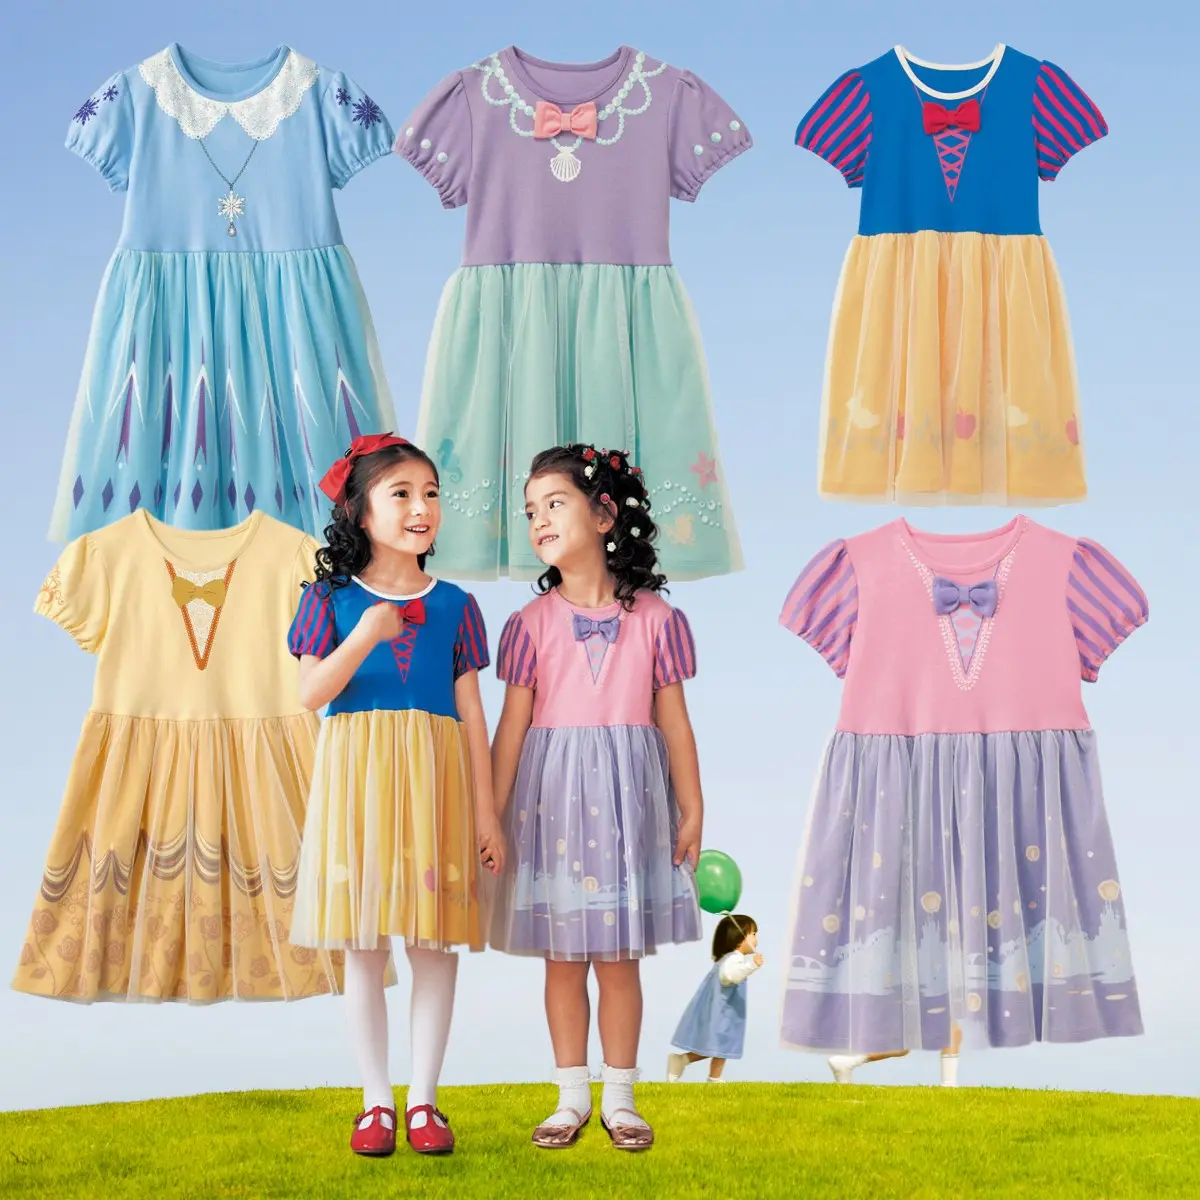 Vestido de algodón puro de media manga para niños y niñas, de 1 año vestido amarillo para niñas, vestido de princesa para niños y niñas, vestido de verano con diseño pintado